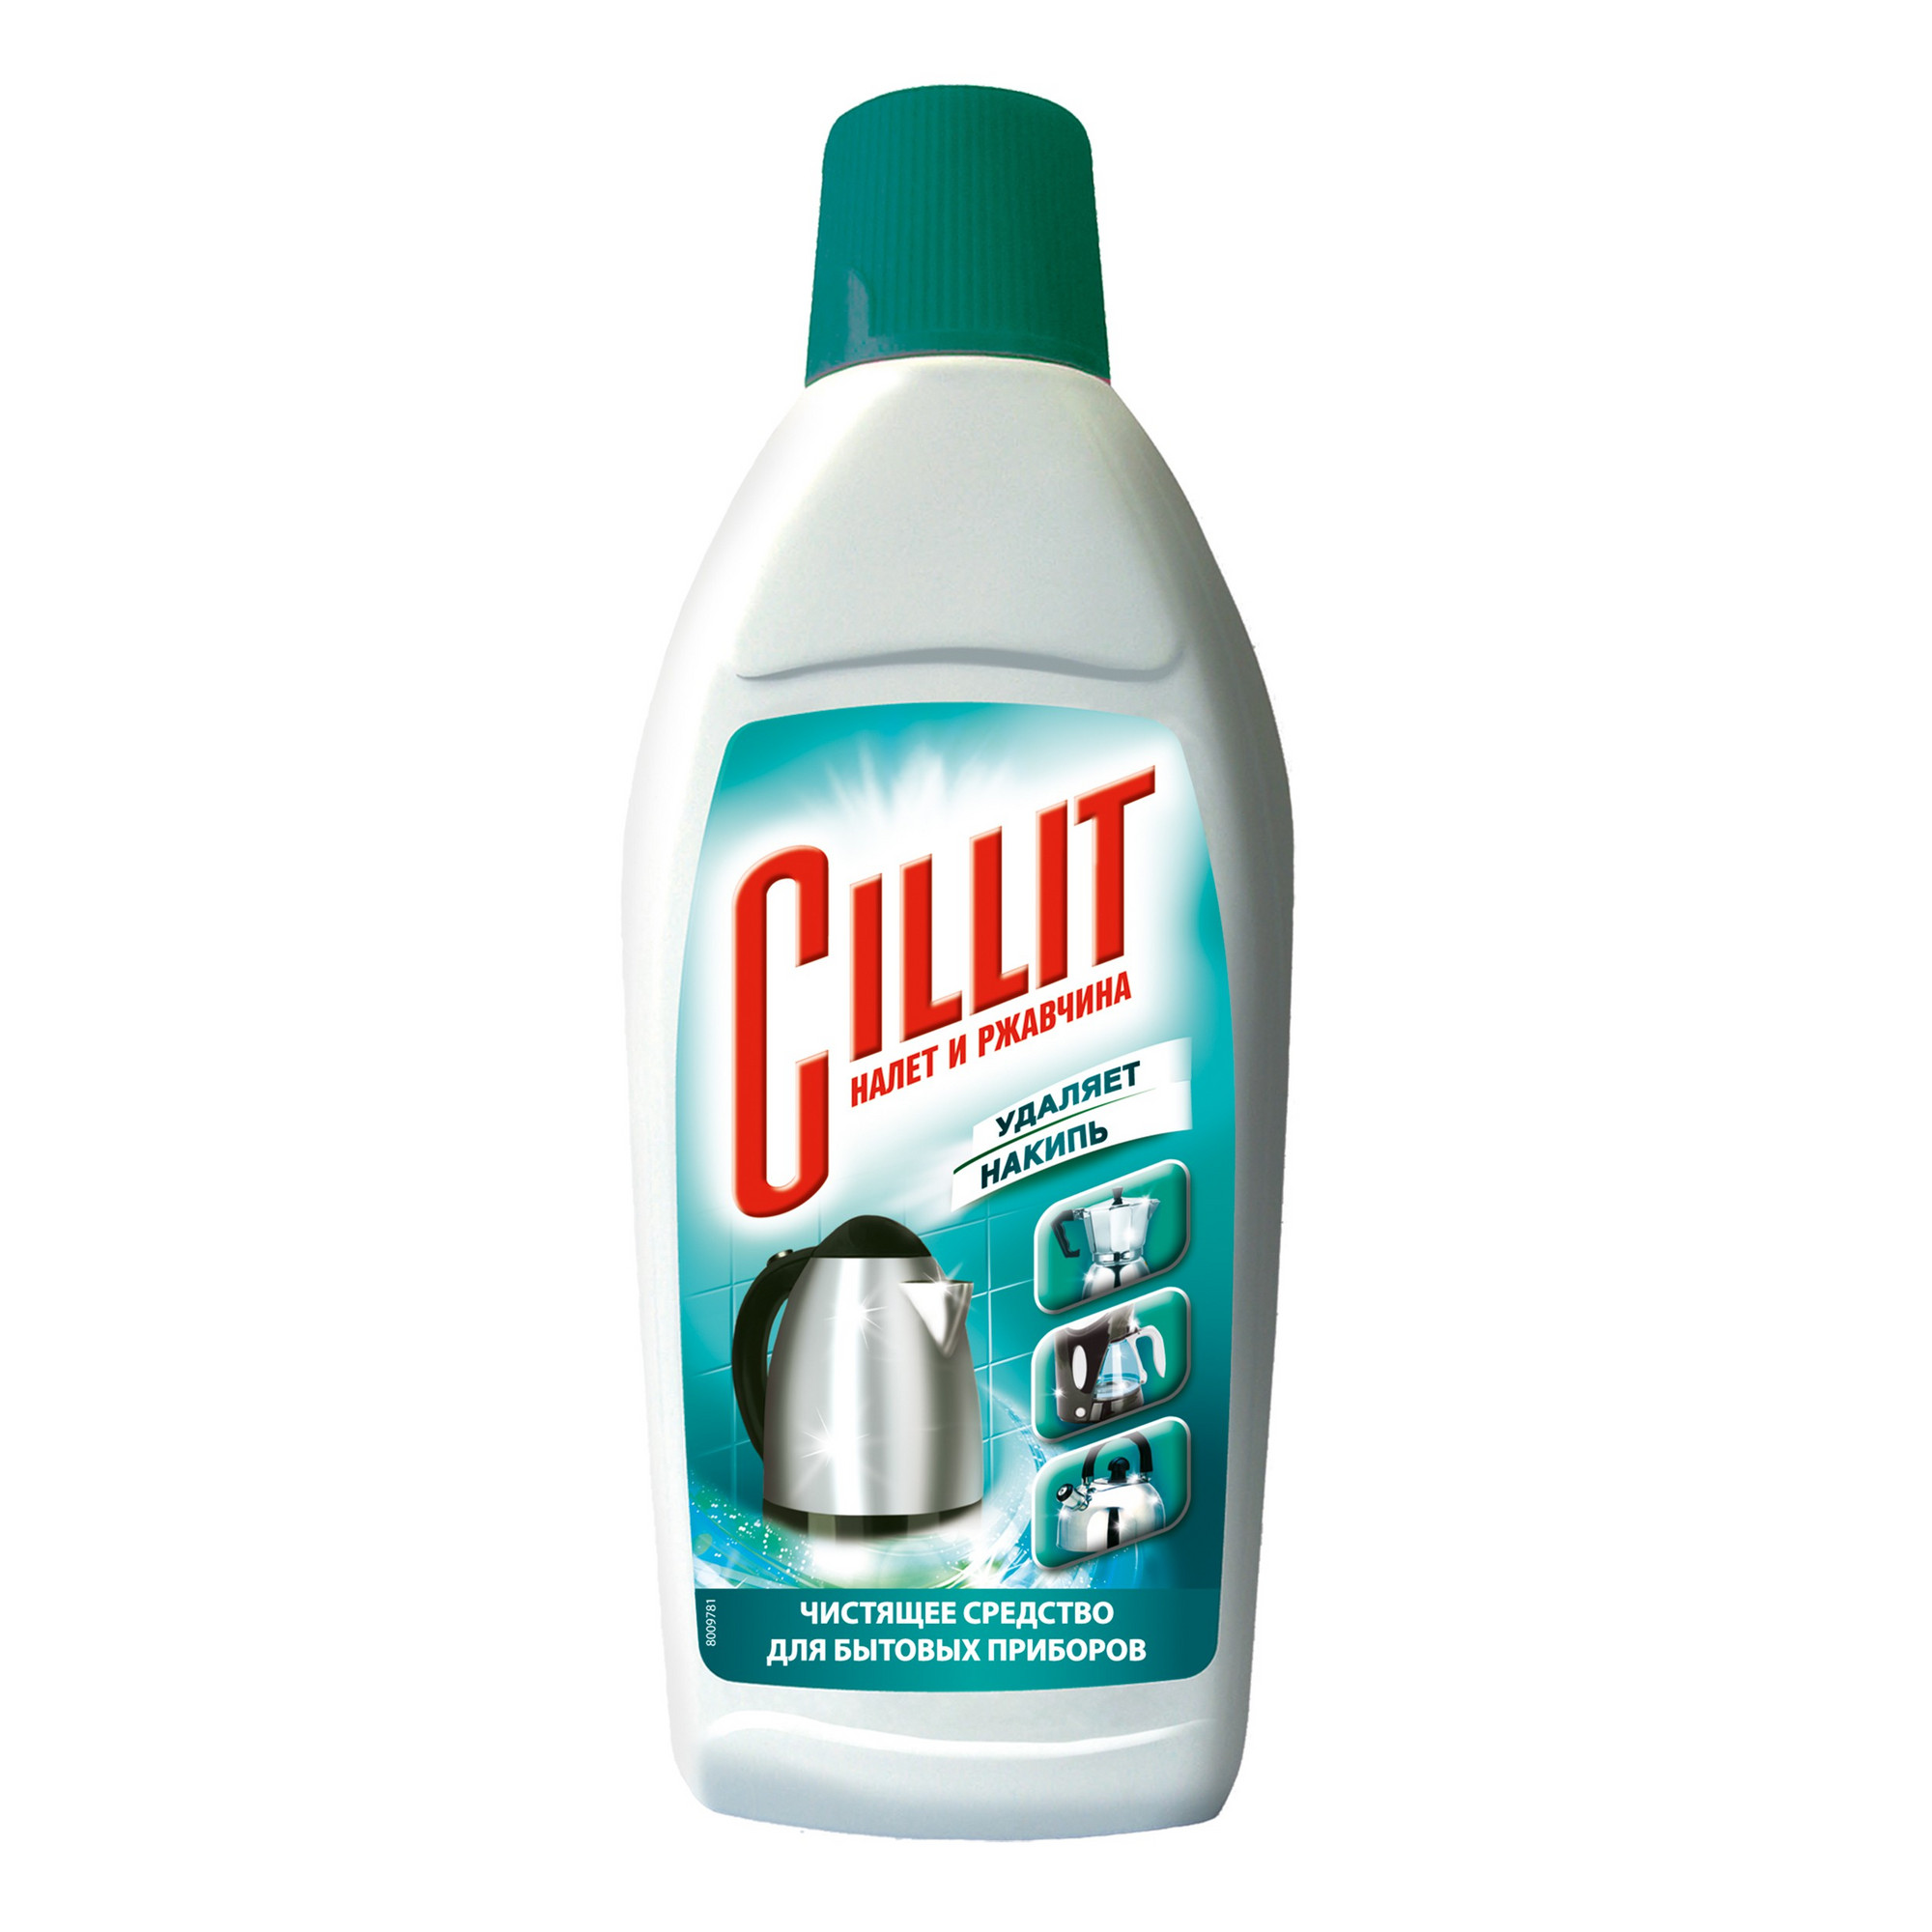 Чистящее средство Cillit для удаления накипи 450 мл средство для удаления накипи и ржавчины для чайников и термопотов любо дело антинакипь 5 20г